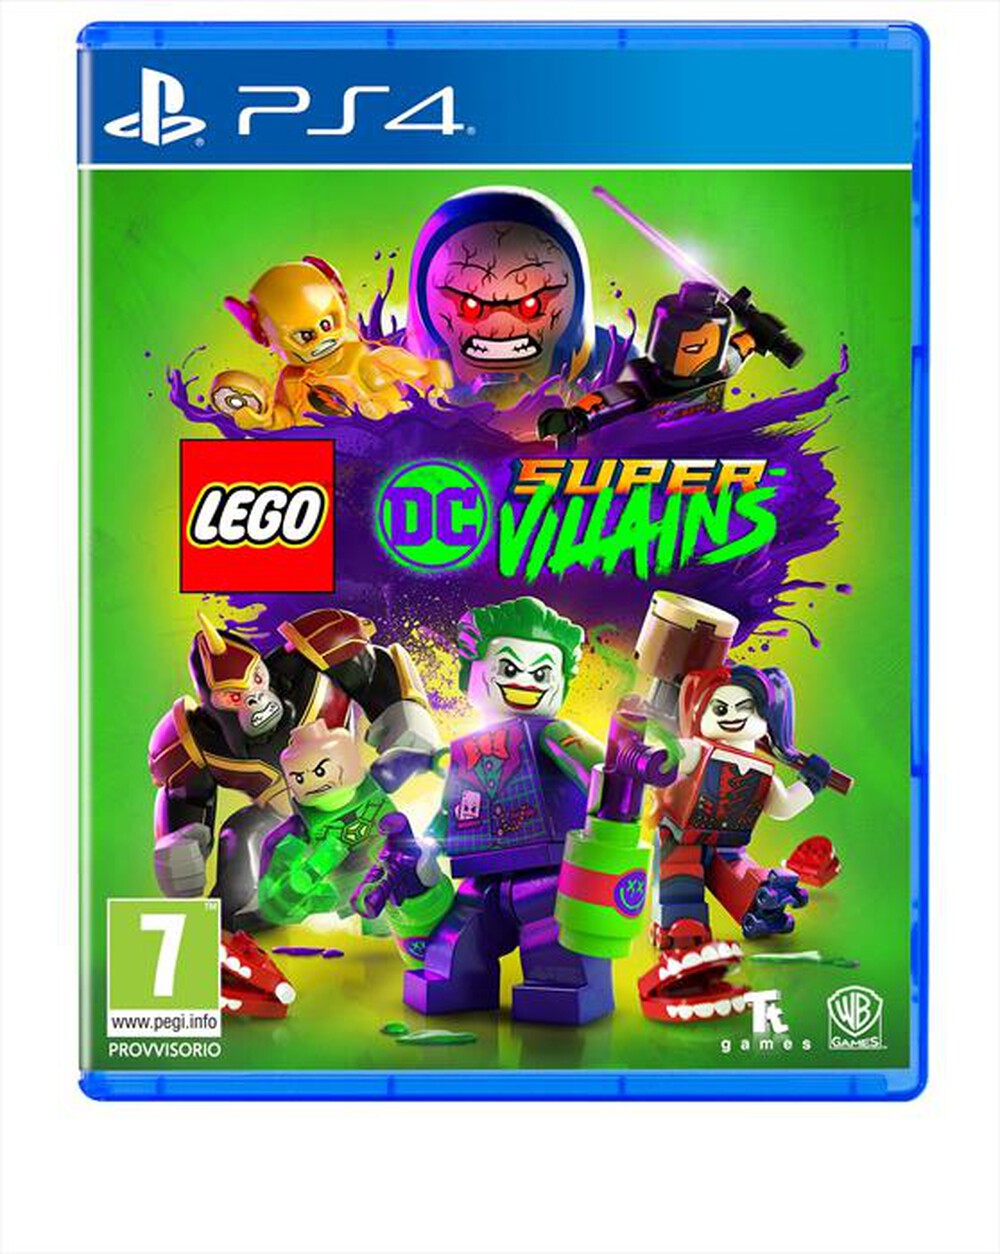 "WARNER GAMES - LEGO DC SUPER VILLAINS PS4"